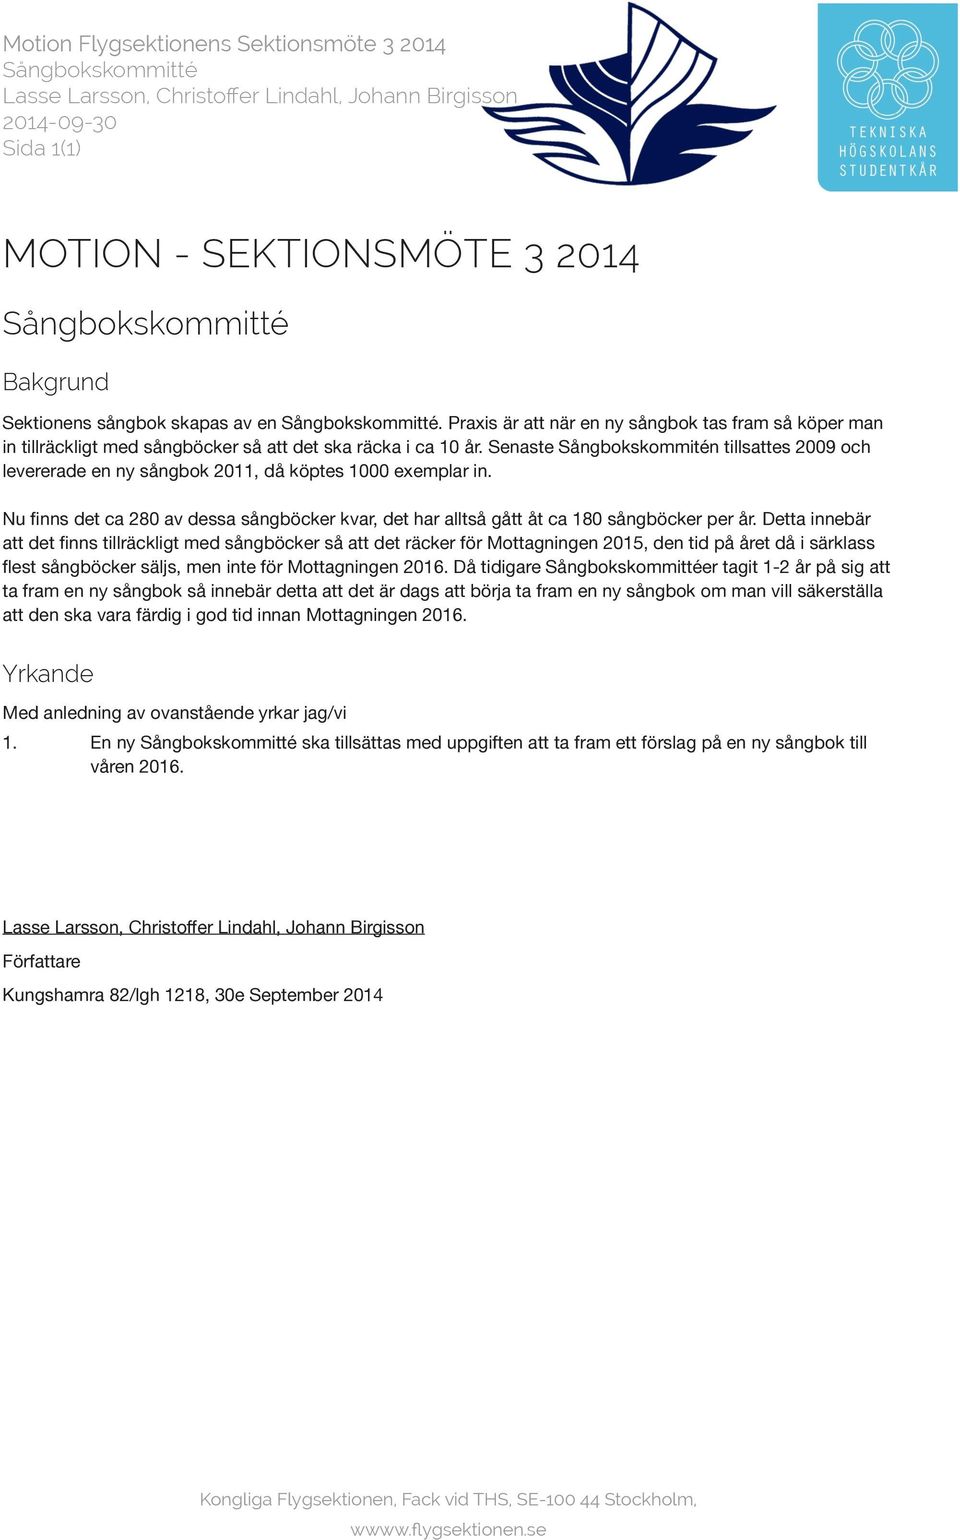 Senaste Sångbokskommitén tillsattes 2009 och levererade en ny sångbok 2011, då köptes 1000 exemplar in. Nu finns det ca 280 av dessa sångböcker kvar, det har alltså gått åt ca 180 sångböcker per år.